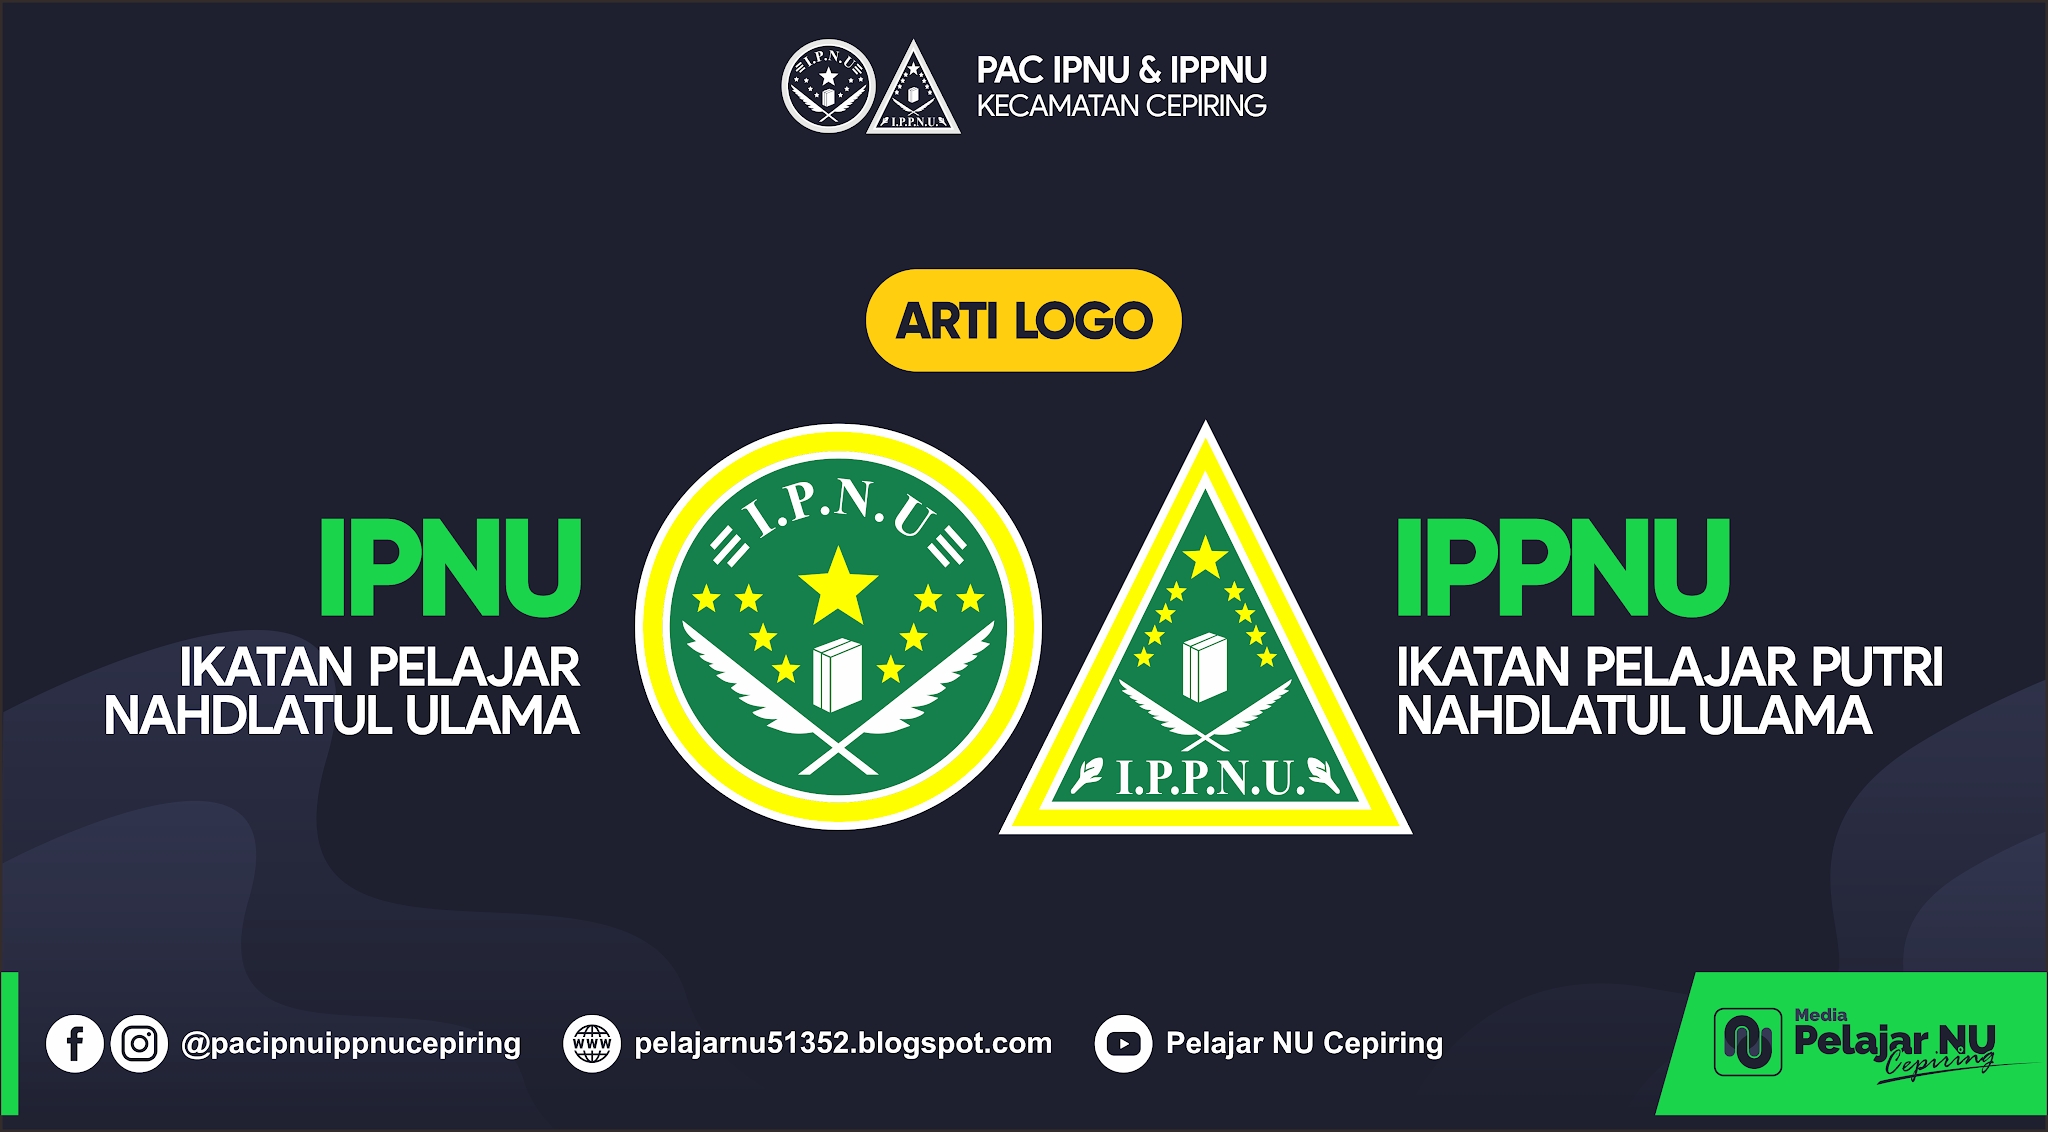 Makna Lambang / Logo IPNU - IPPNU dan Download Format .cdr | Pelajar NU Cepiring